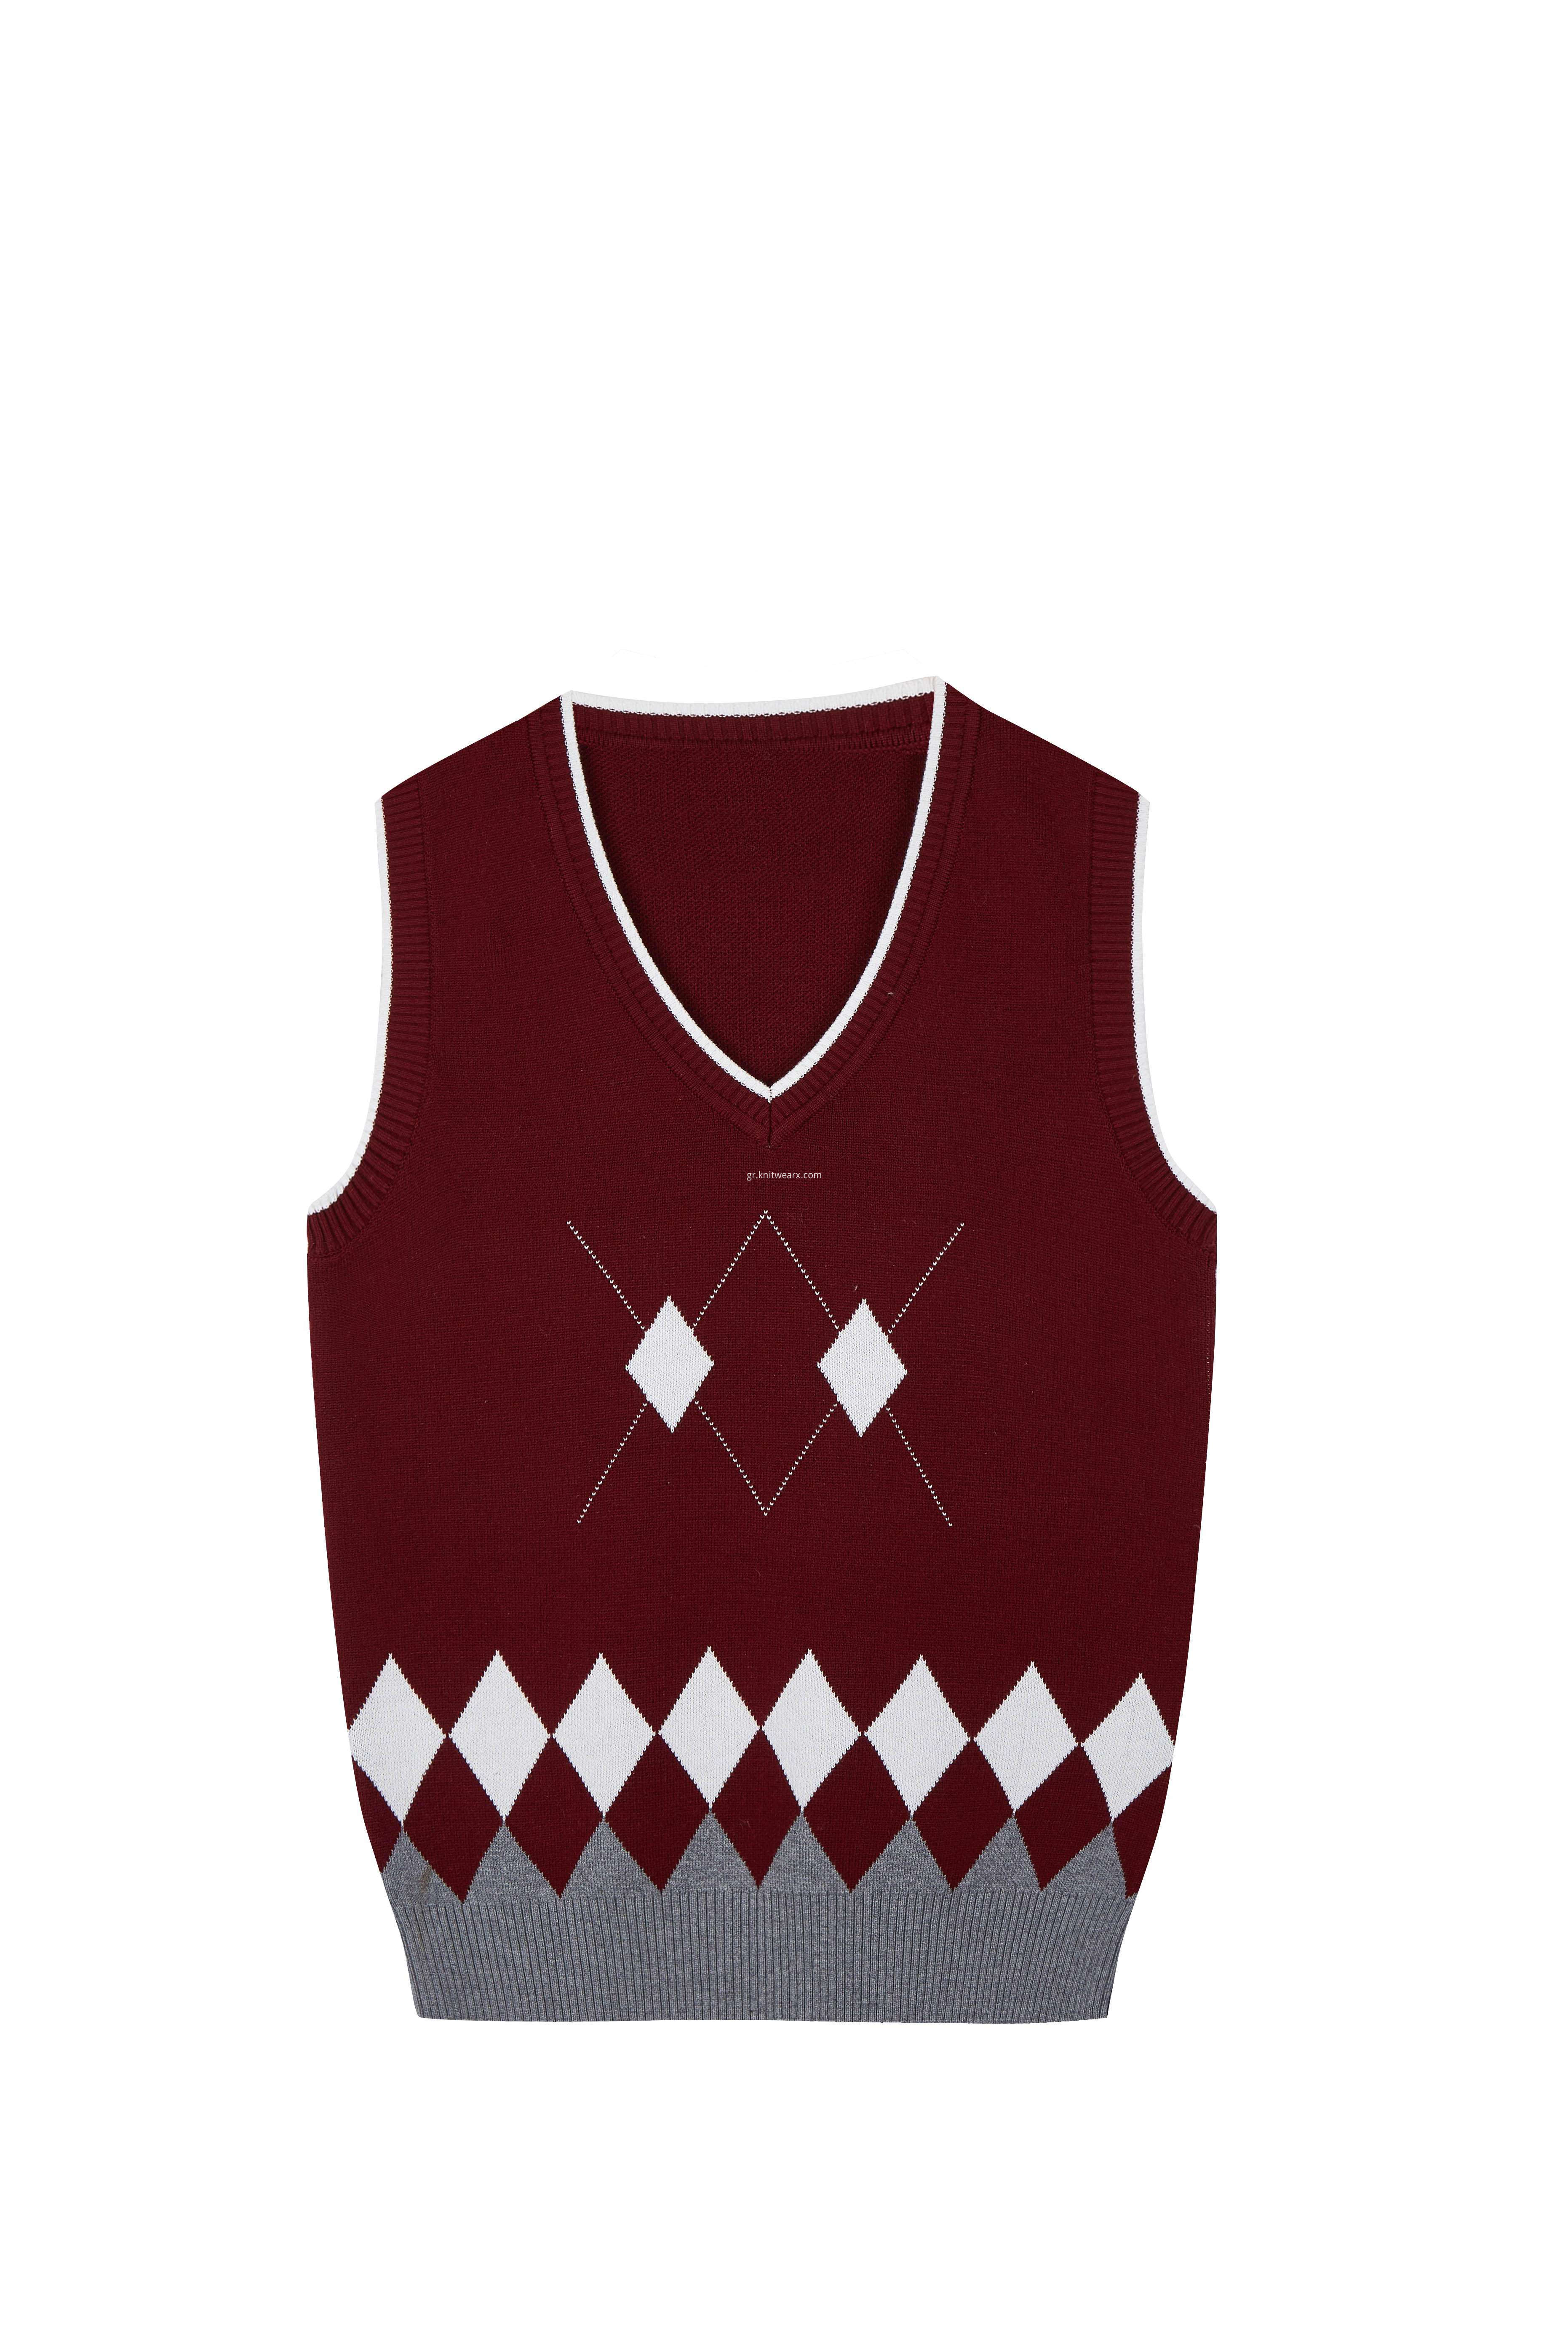 Boy's Knitted Diamond Jacquard Argyle School Vest